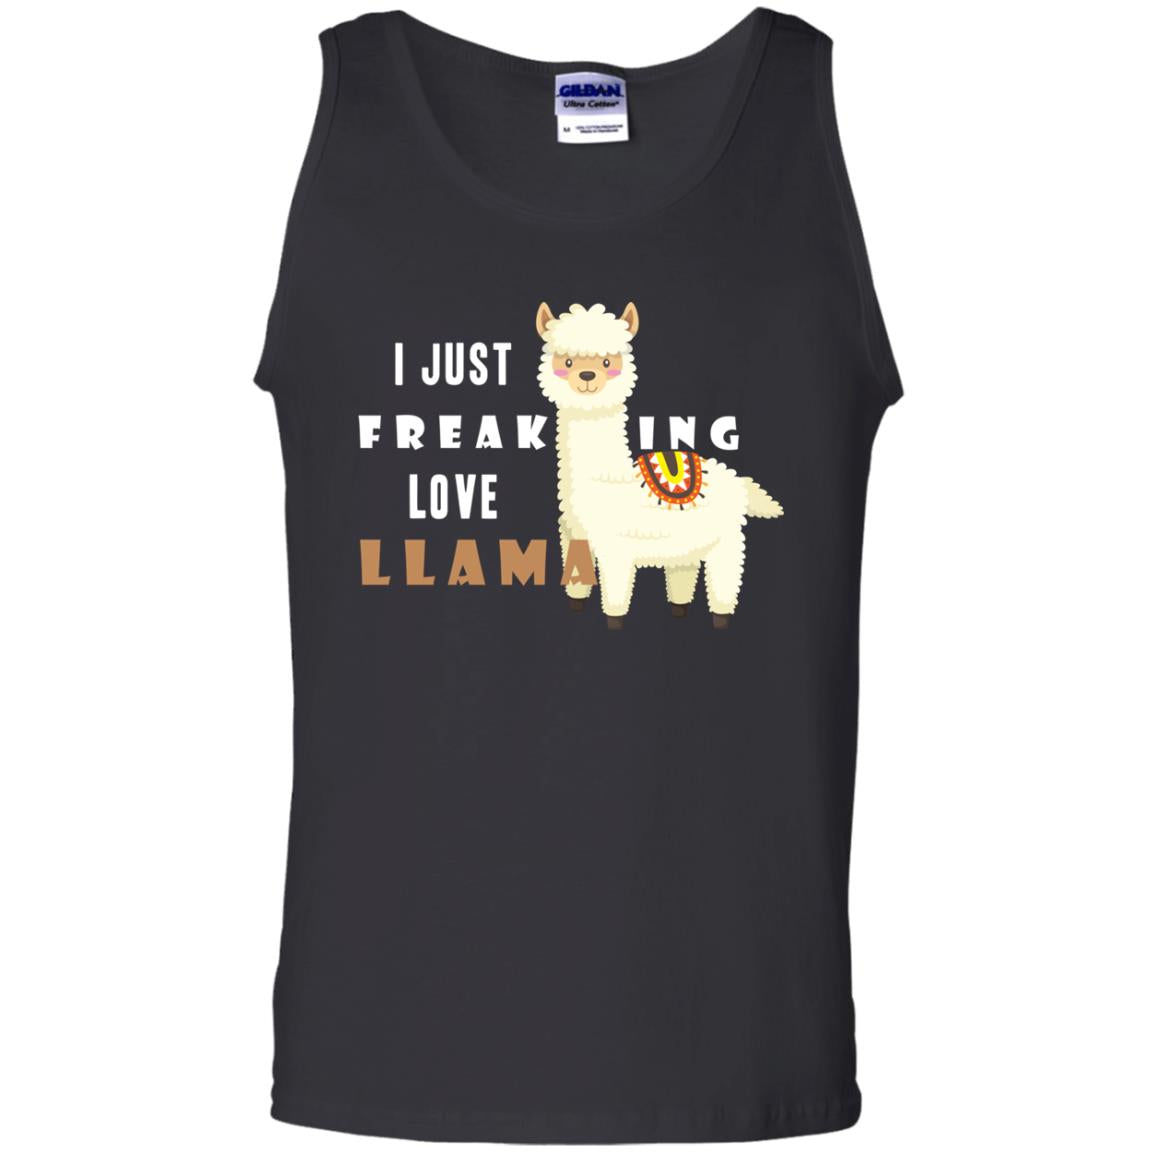 I Just Freaking Love Llama ShirtG220 Gildan 100% Cotton Tank Top